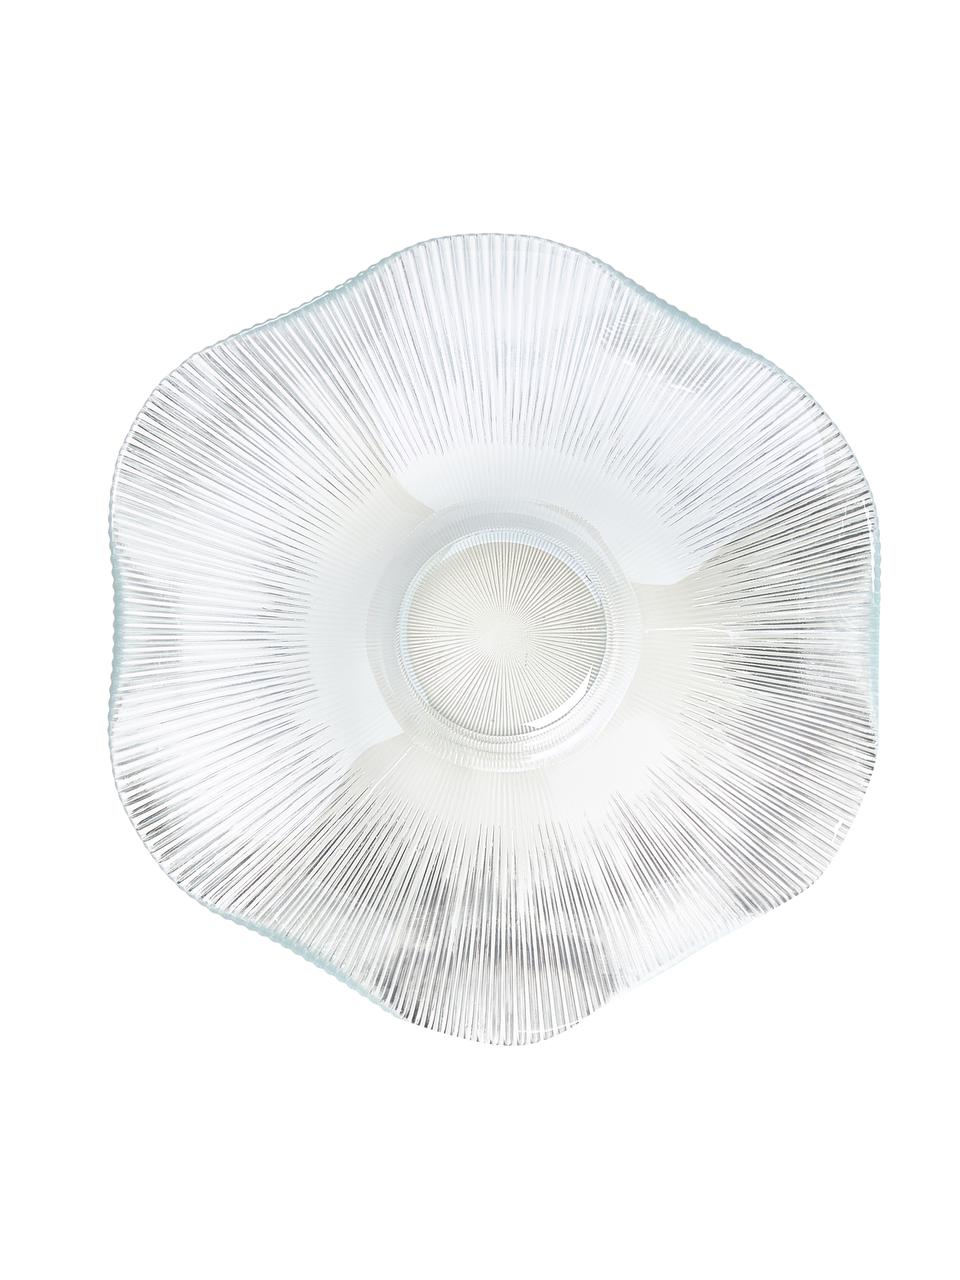 Glas-Schalen Luce mit Rillenrelief in organischer Form, 6 Stück, Glas, Transparent, Ø 23 x H 6 cm